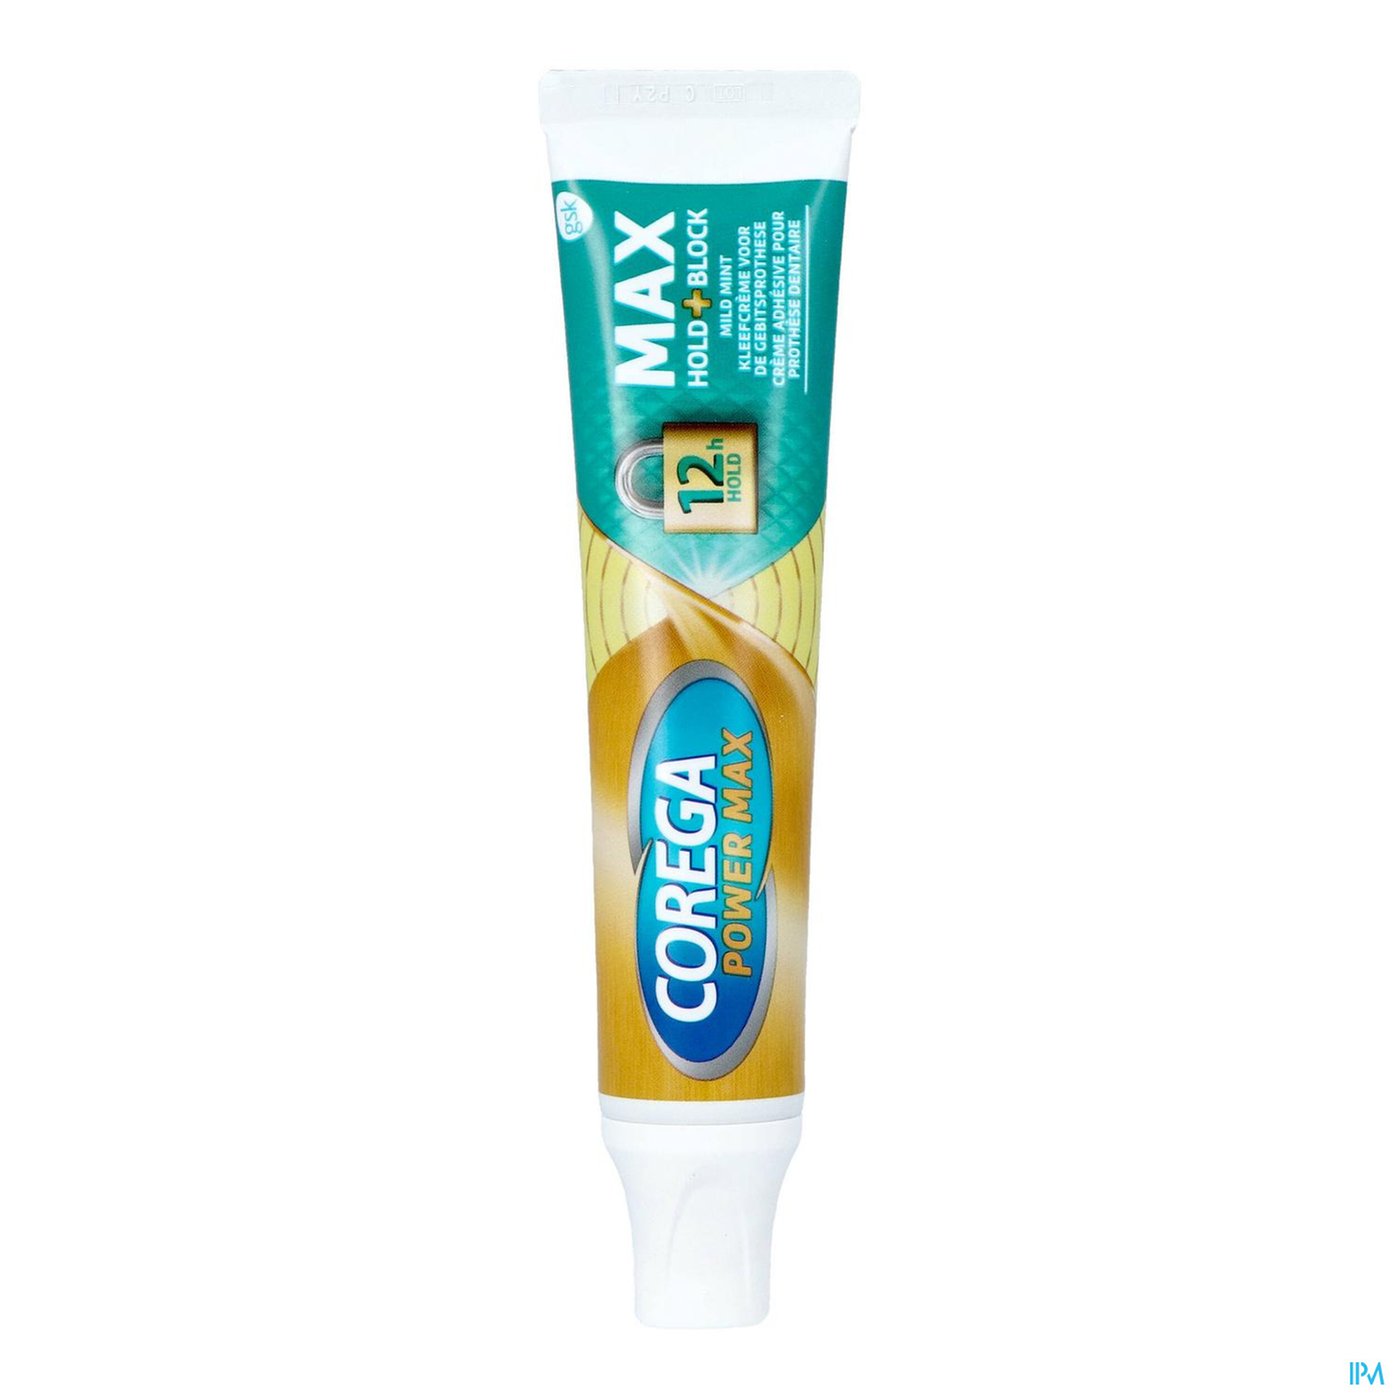 Corega Max Mint Tube 70g productshot